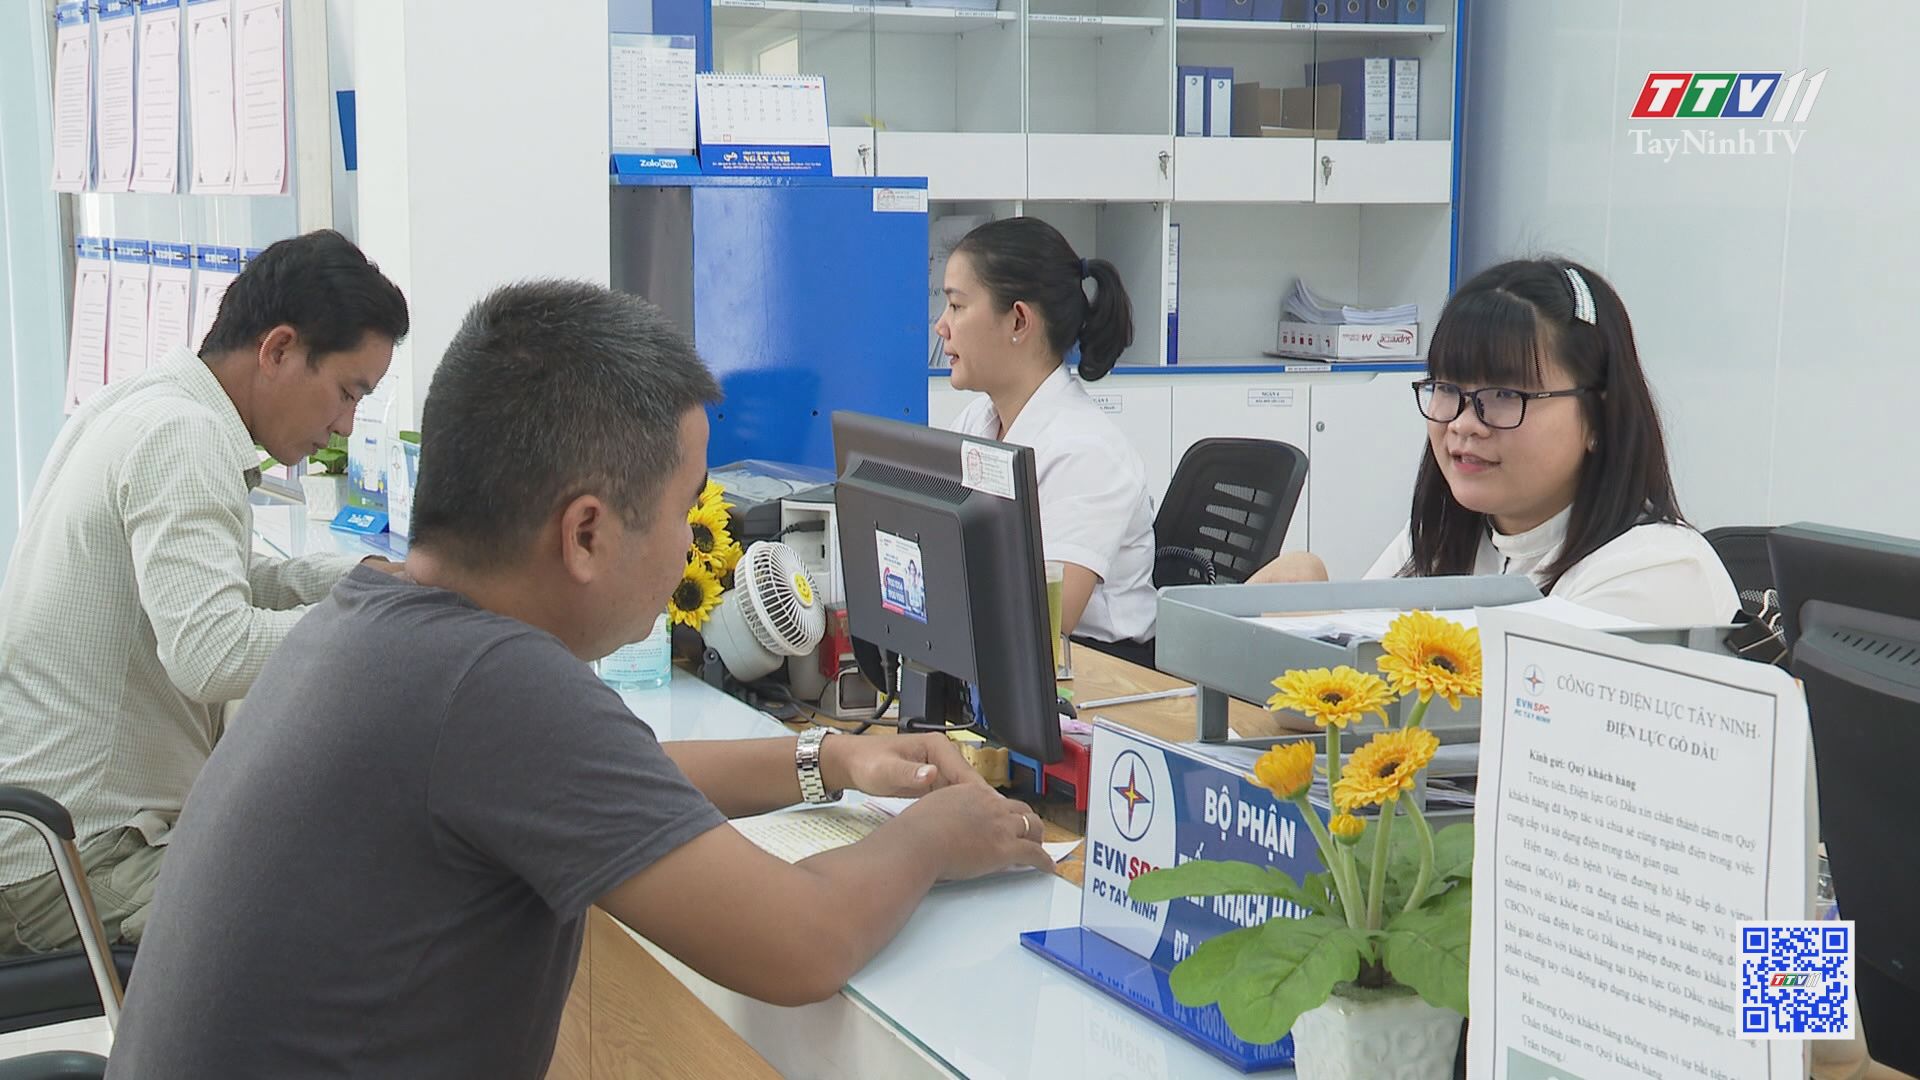 Ngành điện chuyển đổi số để phục vụ khách hàng | CHUYỂN ĐỔI SỐ | TayNinhTV